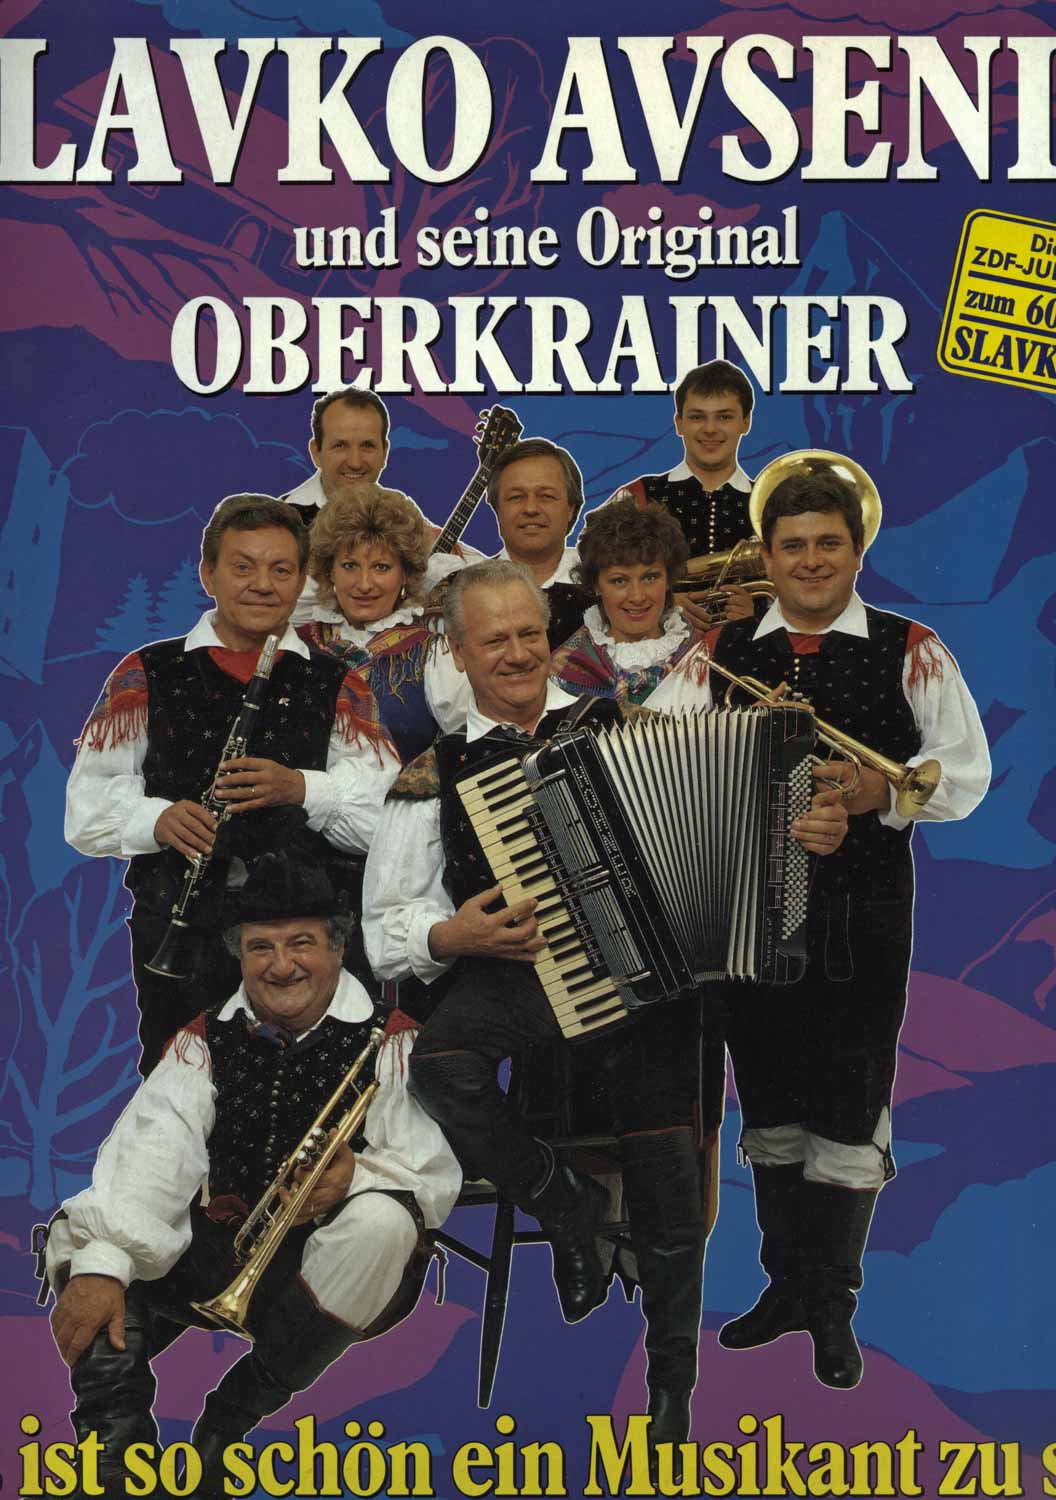 Slavko Avsenik und seine Oberkrainer  Es ist so schön, ein Musikant zu sein (210700-501)  *LP 12'' (Vinyl)*. 